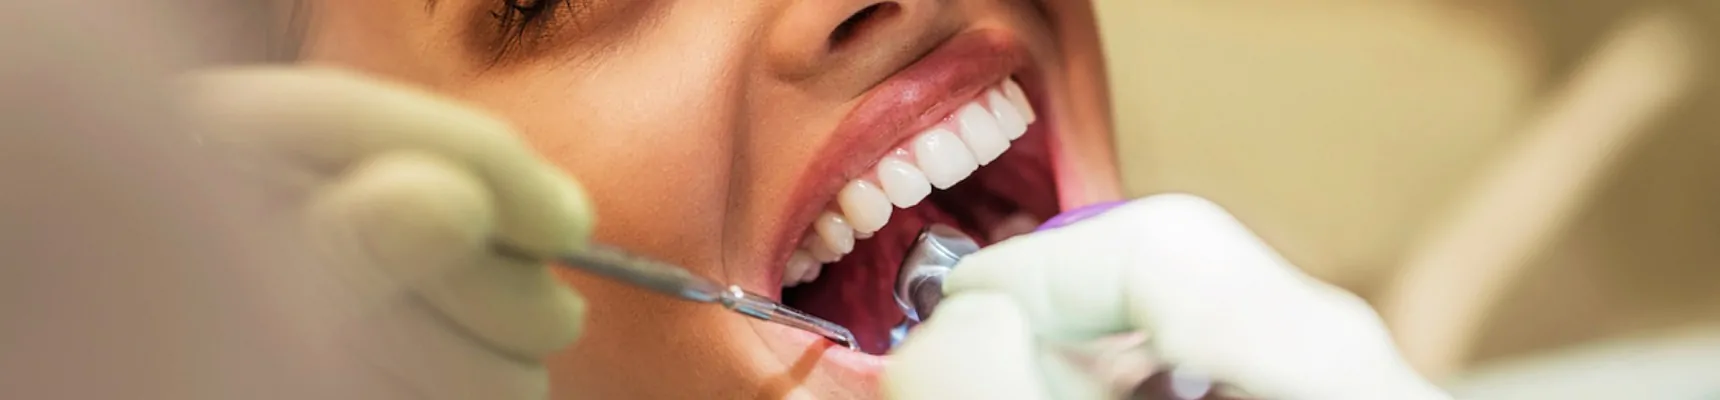 Cabinet dentaire Claude Monet Drs Nguyen traitements parodontie